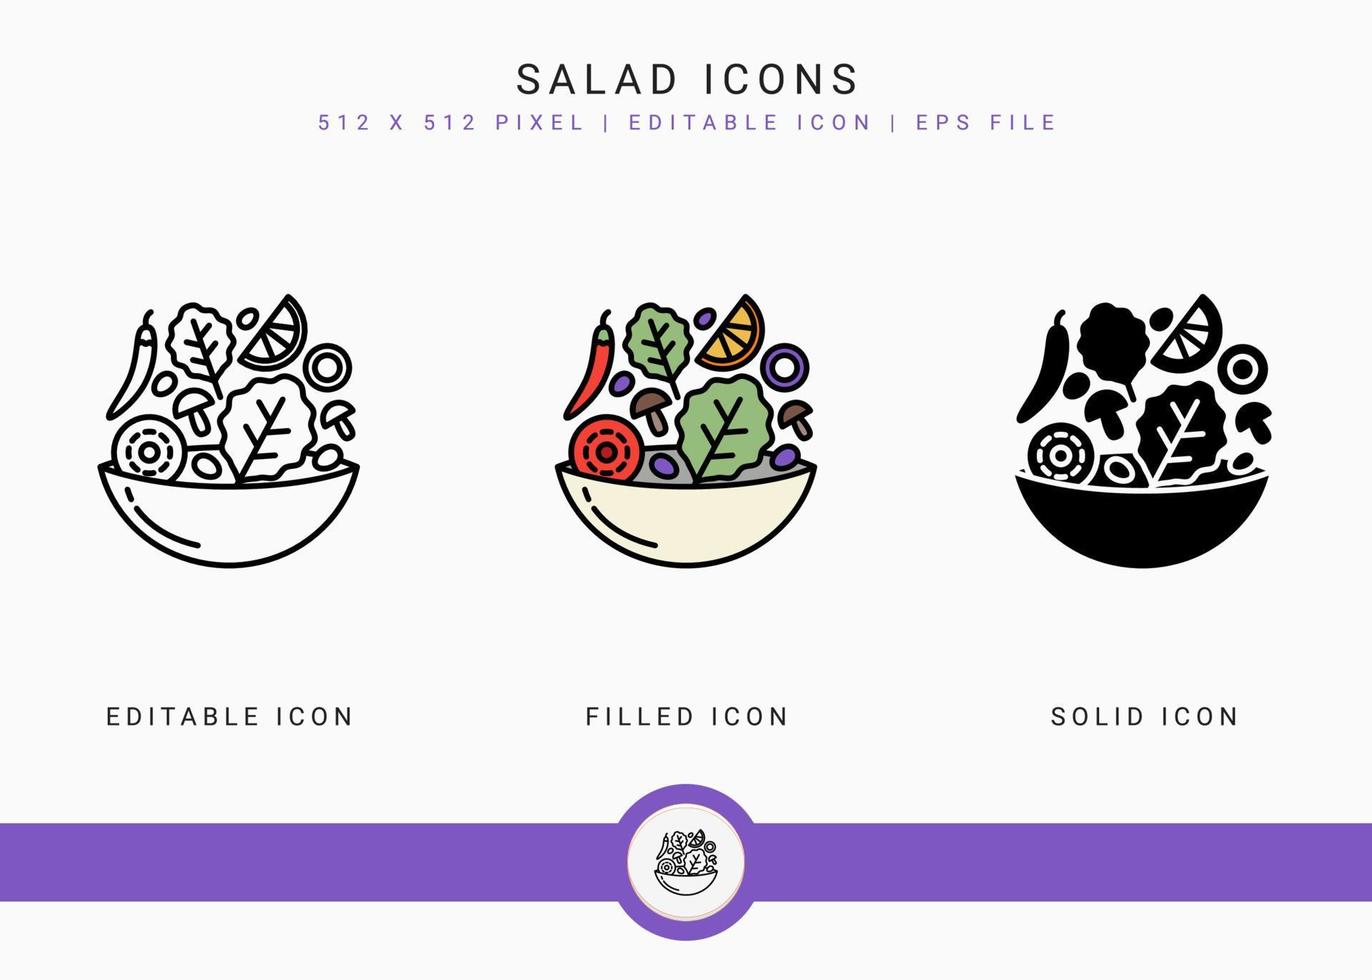 le icone dell'insalata impostano l'illustrazione vettoriale con lo stile della linea dell'icona solido. concetto di cibo dietetico sano. icona del tratto modificabile su sfondo bianco isolato per il web design, l'interfaccia utente e l'applicazione mobile